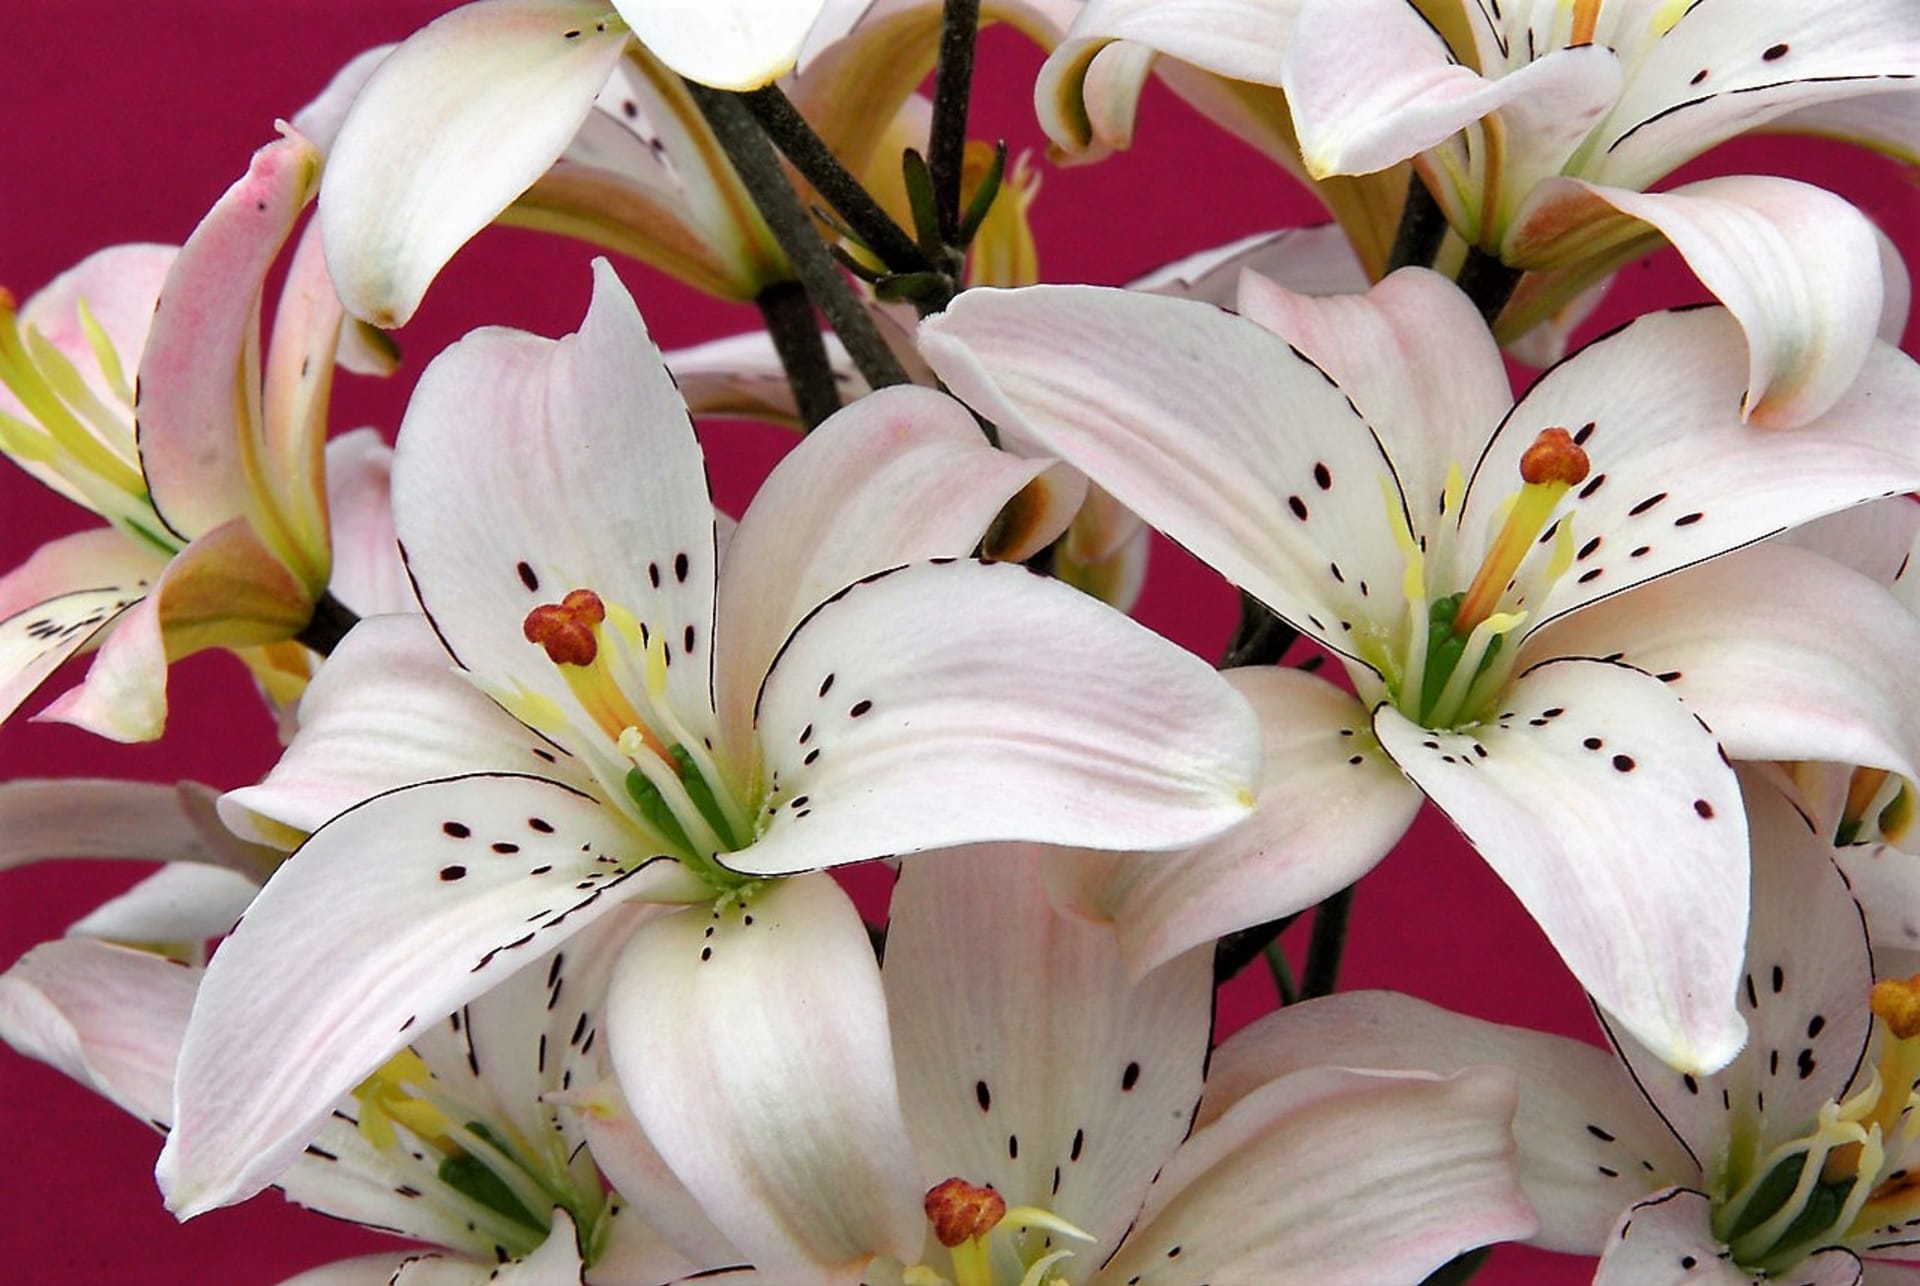 Asijské hybridní lilie patři k nejpopulárnějším skupinám lilií, které se u nás pěstují v zahradě a jsou vhodné k řezu  Na snímku kultirvar Spring Pink Ait. 